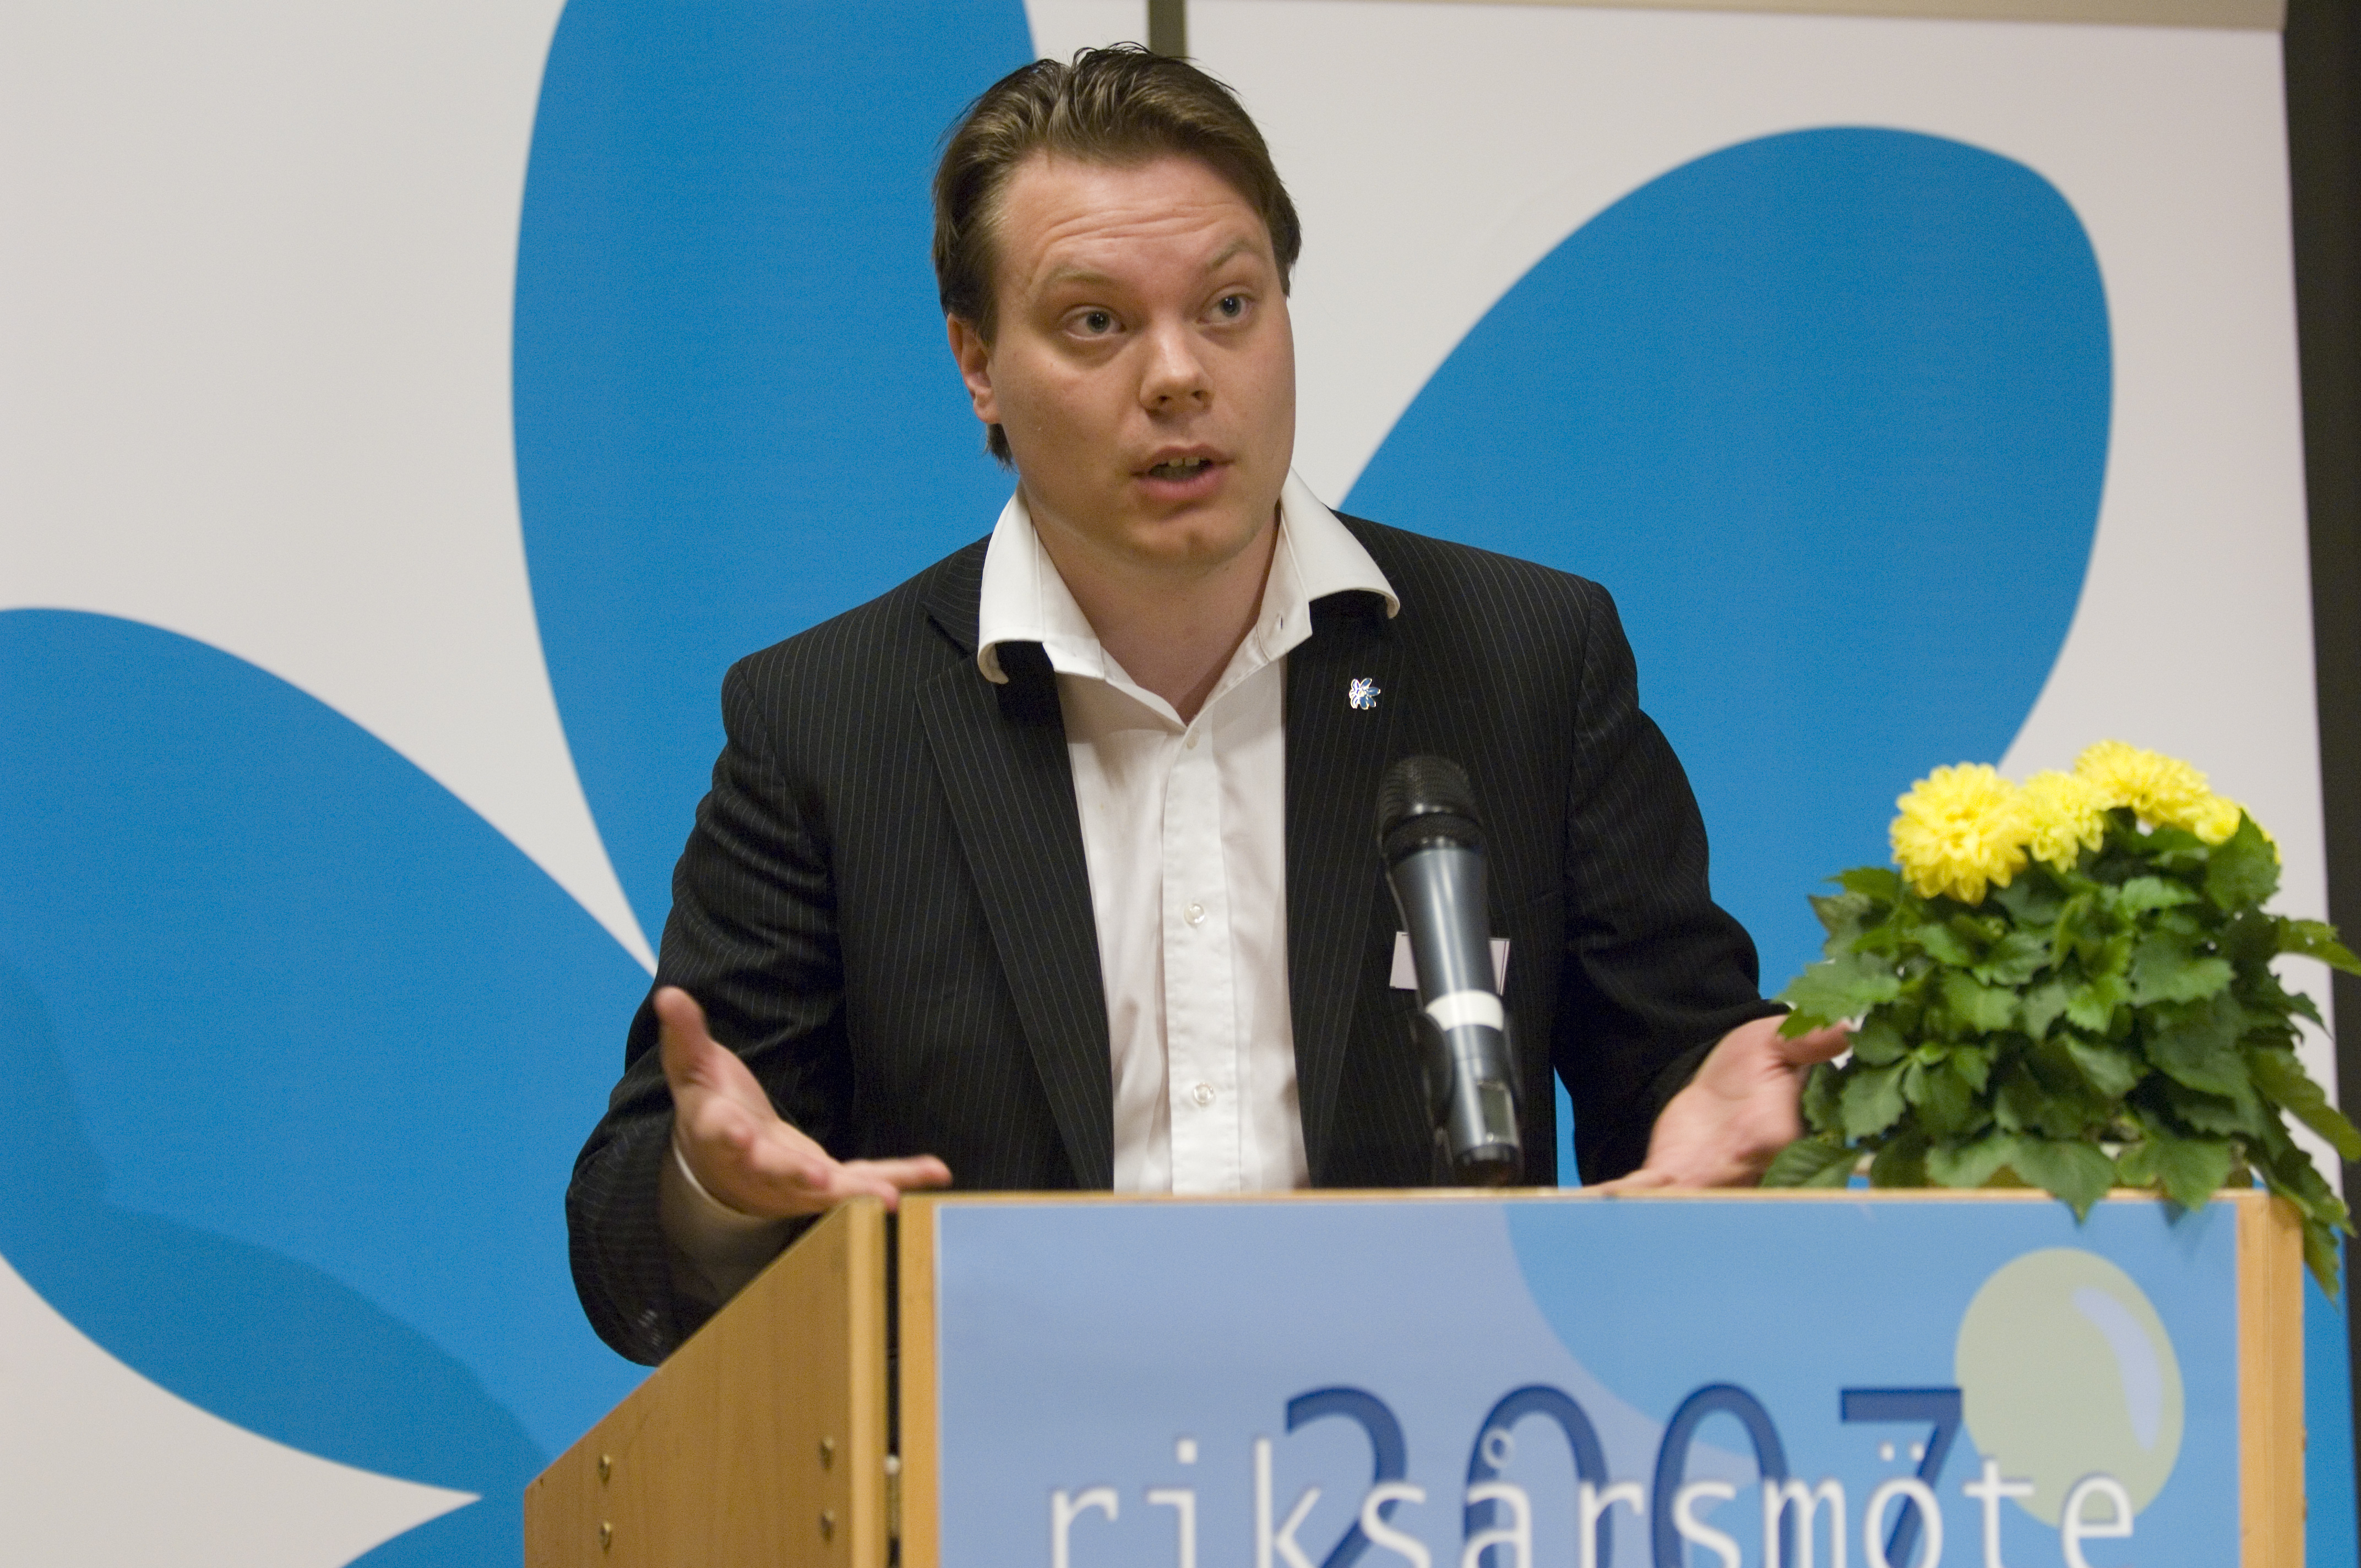 Sverigedemokraterna, Anders Behring Breivik, Oslo, Politik, Debatt, Diskussion, Press